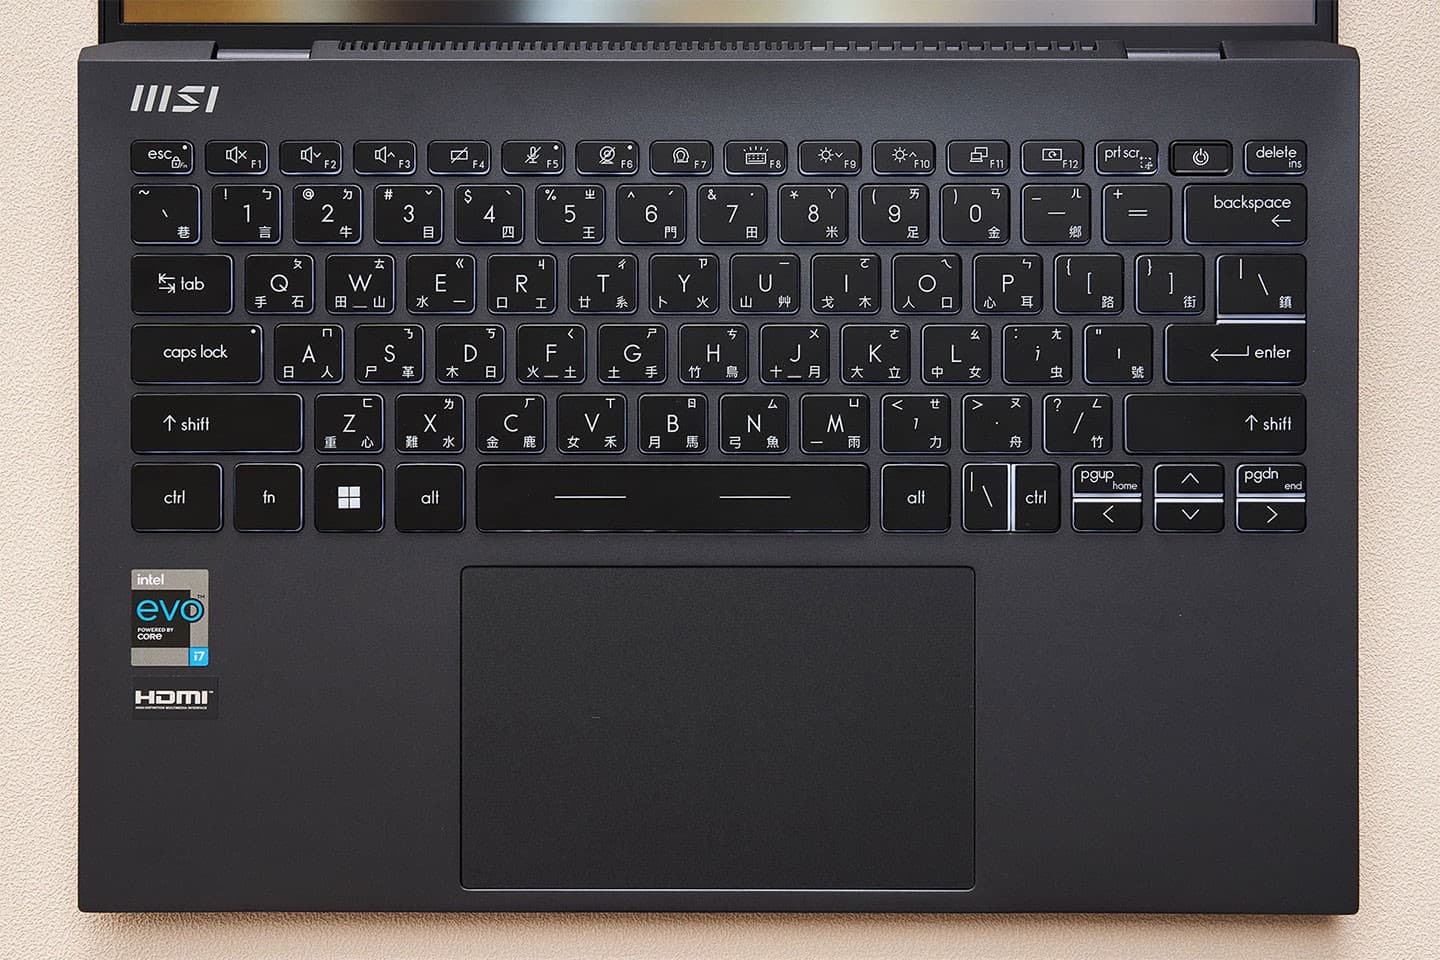 機身 C 面配置島式鍵盤，以及無鍵式的大尺寸觸控板。左下角的標示貼紙也示 Prestige 13 Evo 就是一台通過 Intel Evo 認的商務電。